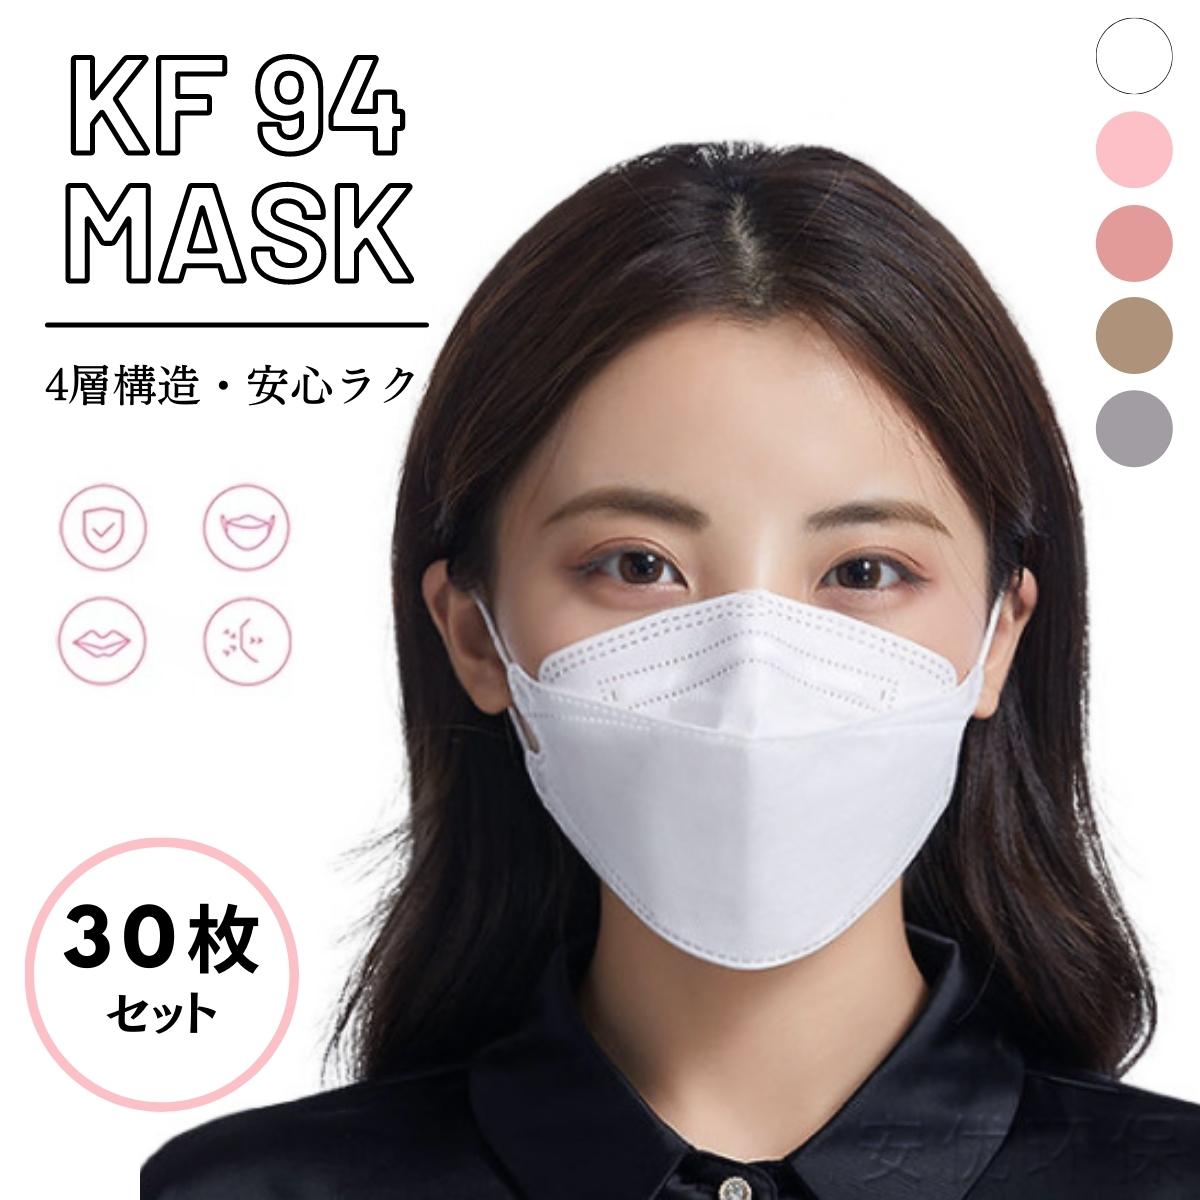 マスク 不織布 立体 kf94 30枚 3Dマスク 使い捨て 不織布マスク 3D立体 耳が痛くならない おしゃれ 4層立体構造 大人 メガネ 曇り 口紅 kf94マスク 韓国マスク 血色マスク 送料無料